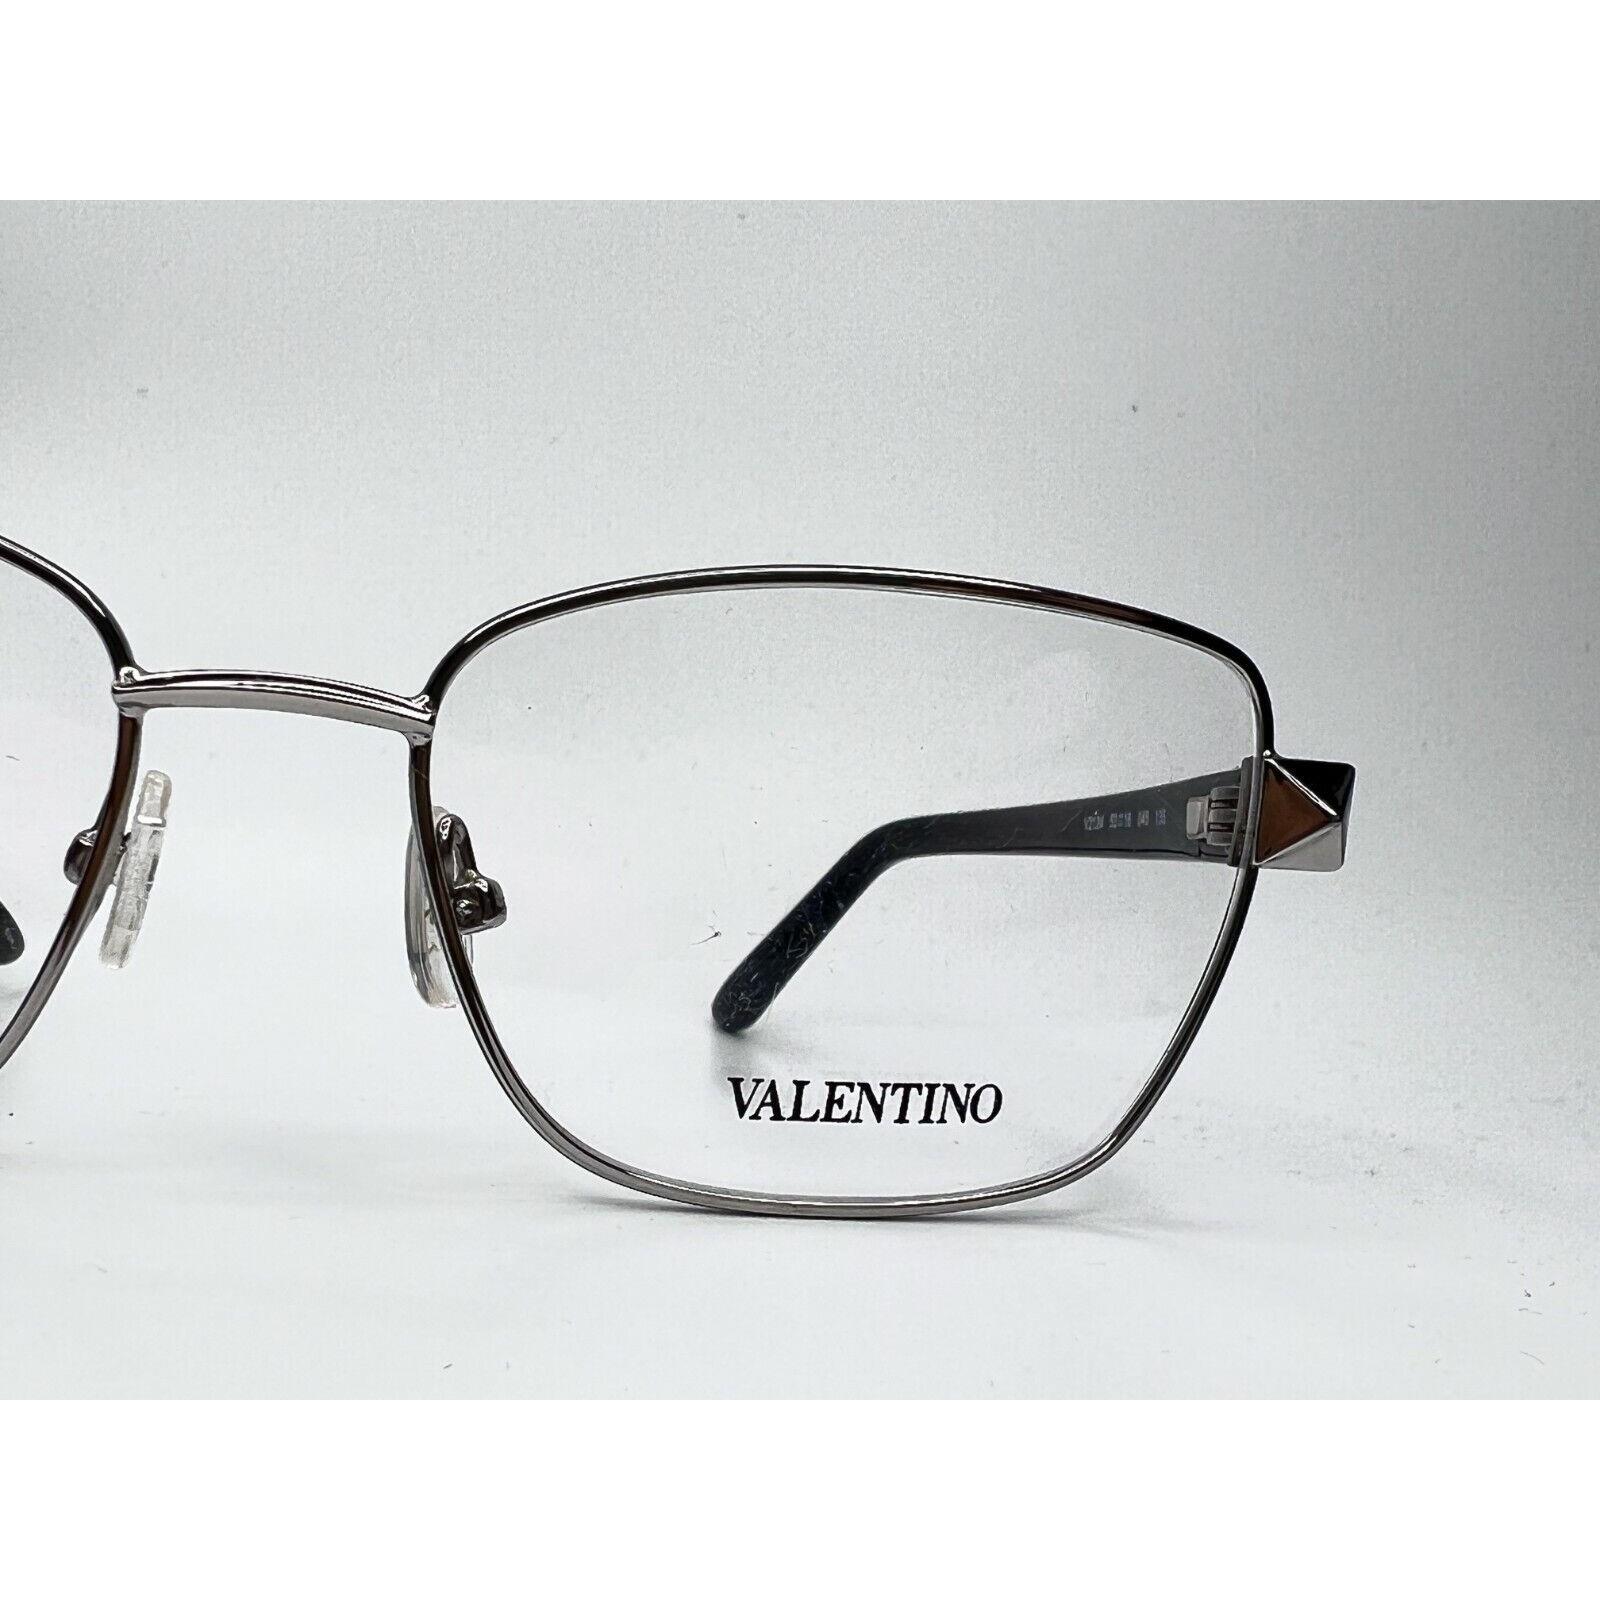 Valentino eyeglasses  - Silver Frame 0